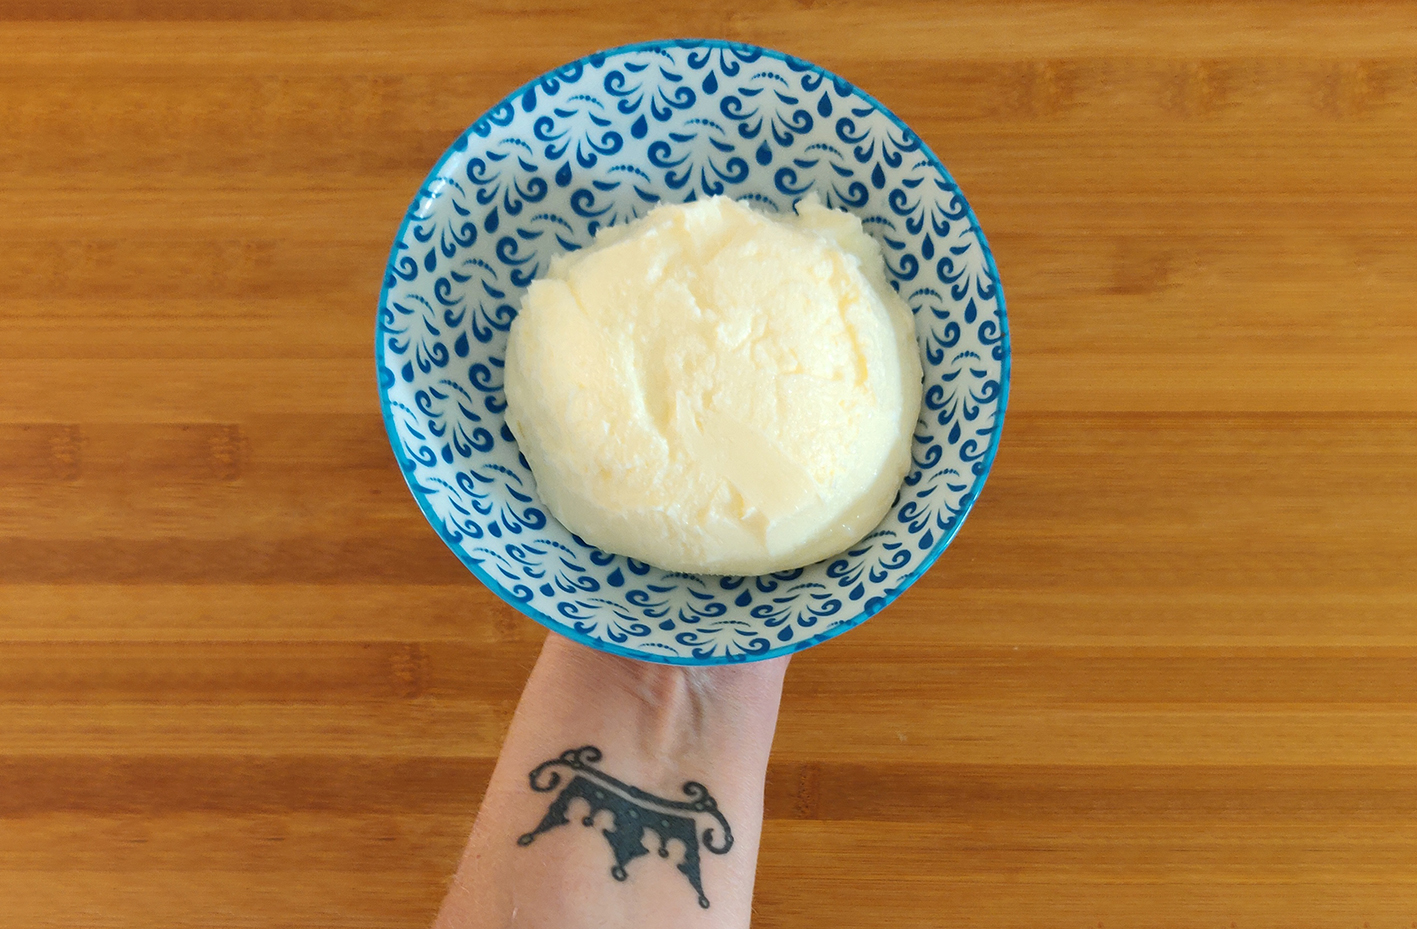 חמאה ביתית (צילום: אלונה זוהר)